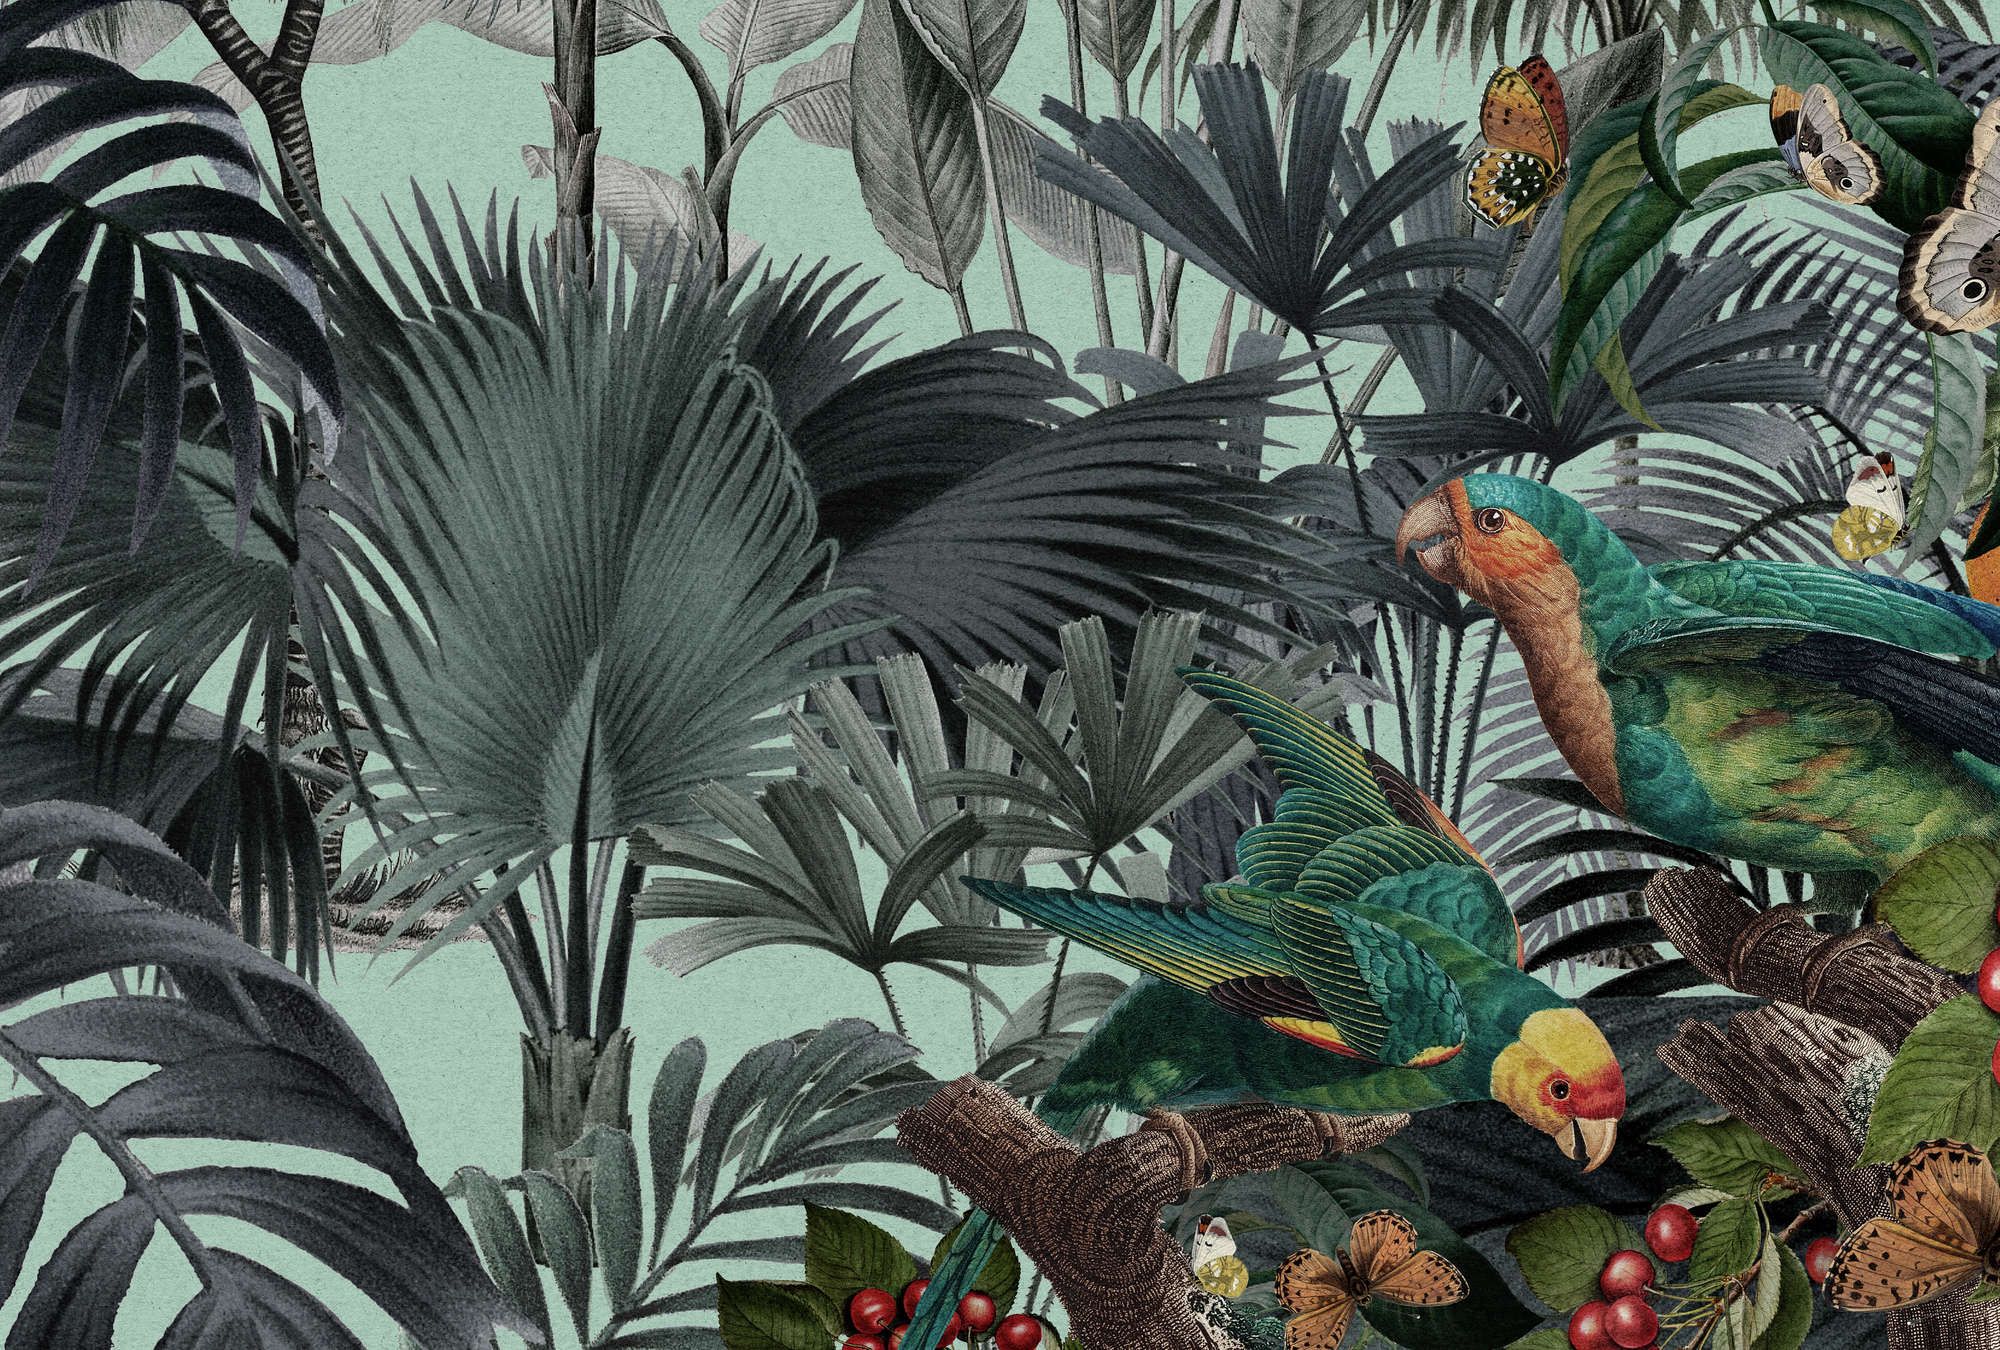             Digital behang »arabella« - Jungle & papegaaien op kraftpapier look - Gladde, licht parelmoerglanzende vliesstof
        